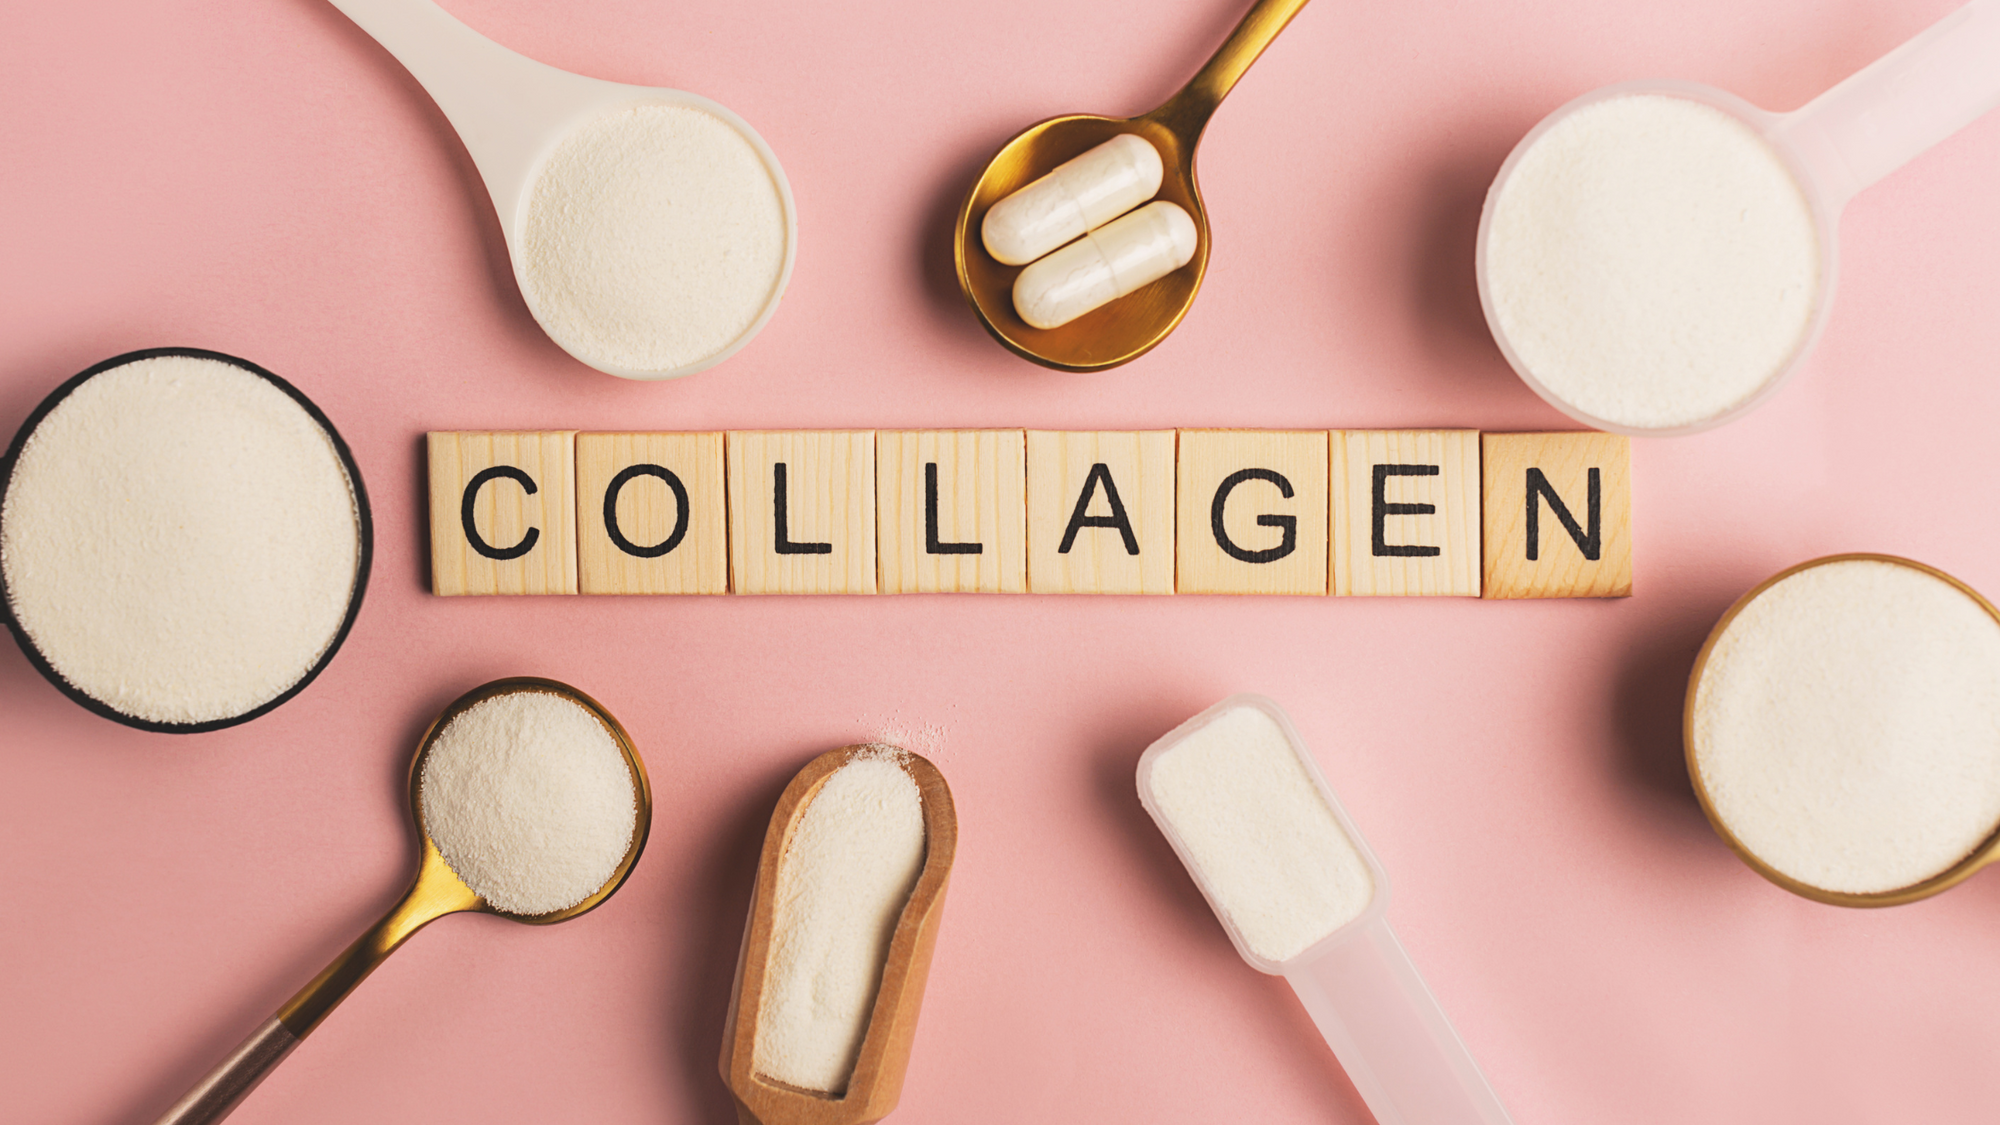 Liquid Collagen vs Powder. Which Is Better?